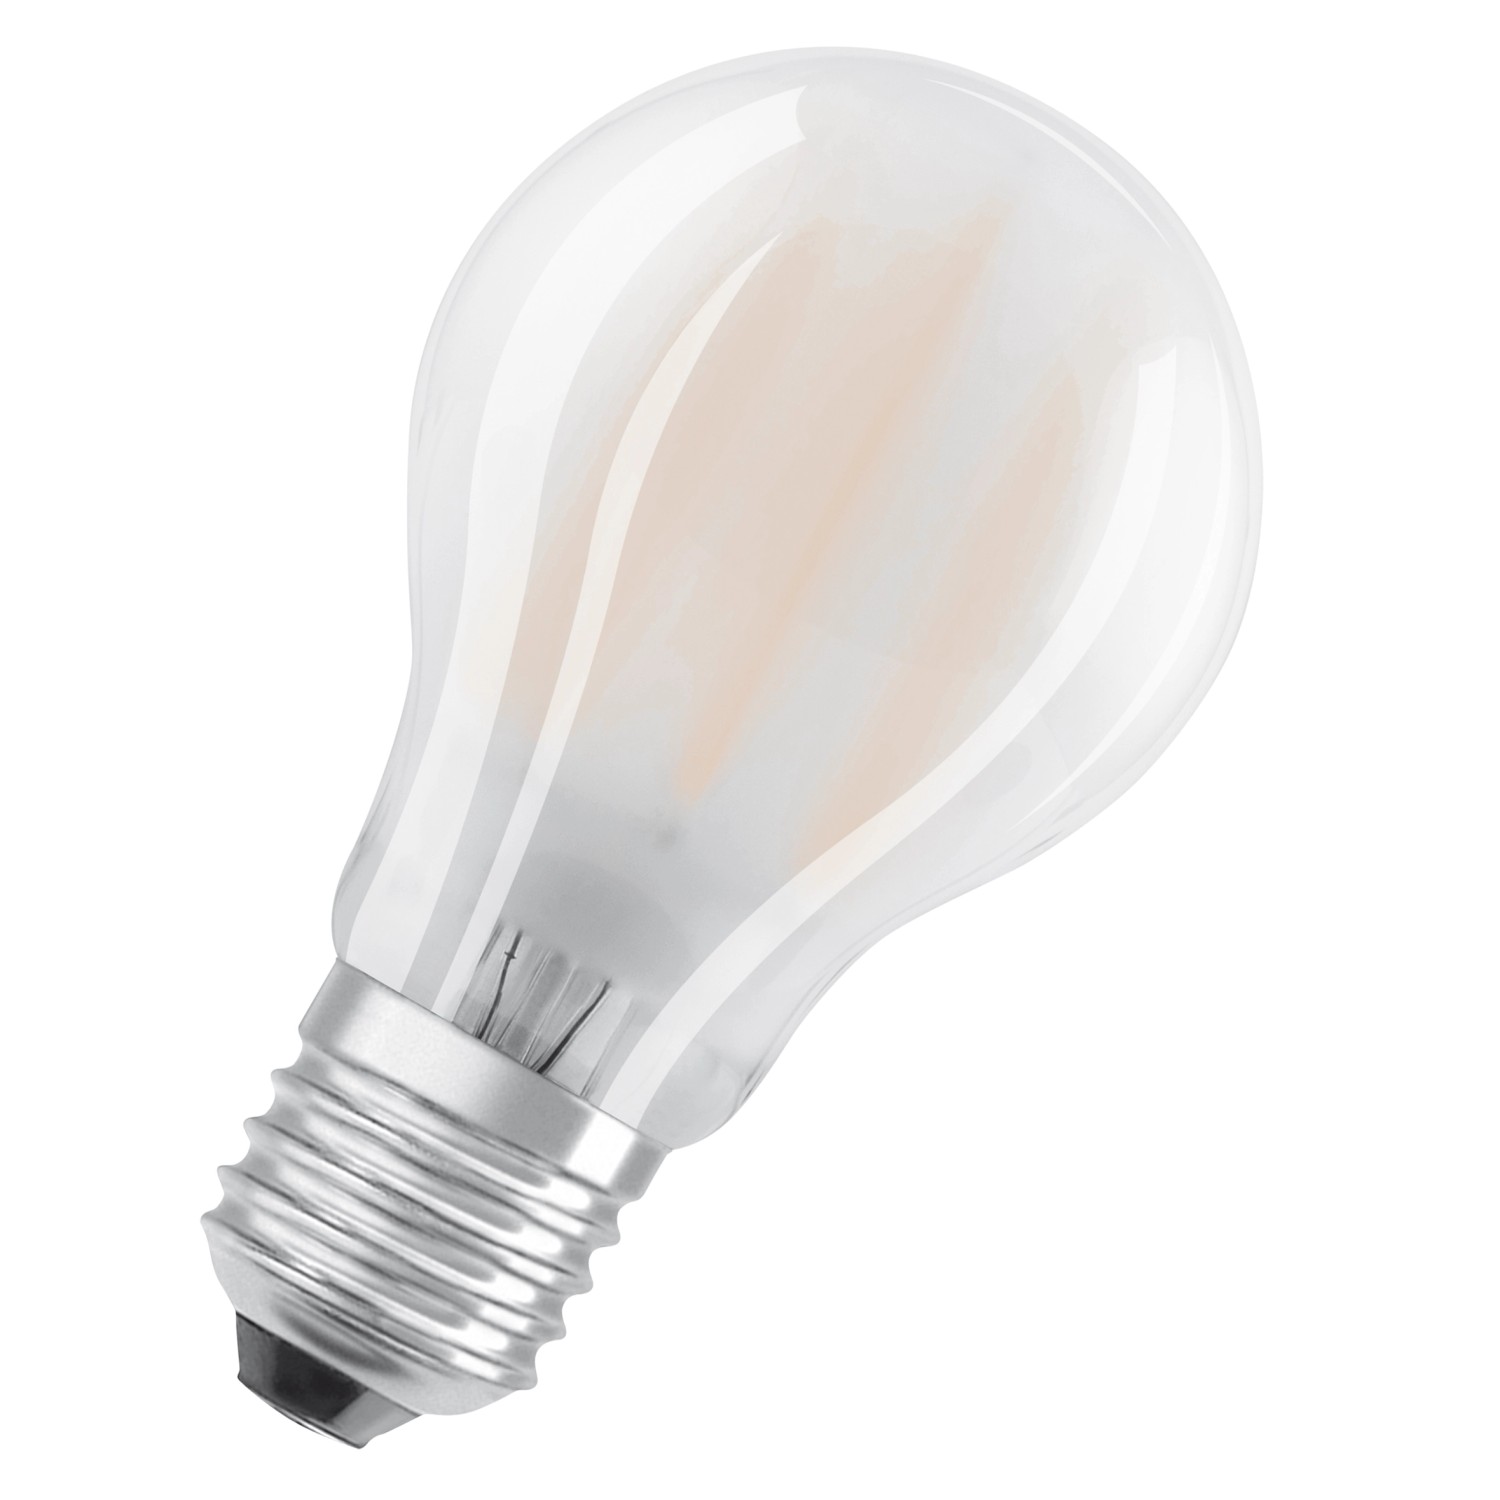 Osram LED-Leuchtmittel E27 Glühlampenform 11 W 1521 lm 10,5 x 6 cm (H x Ø) günstig online kaufen